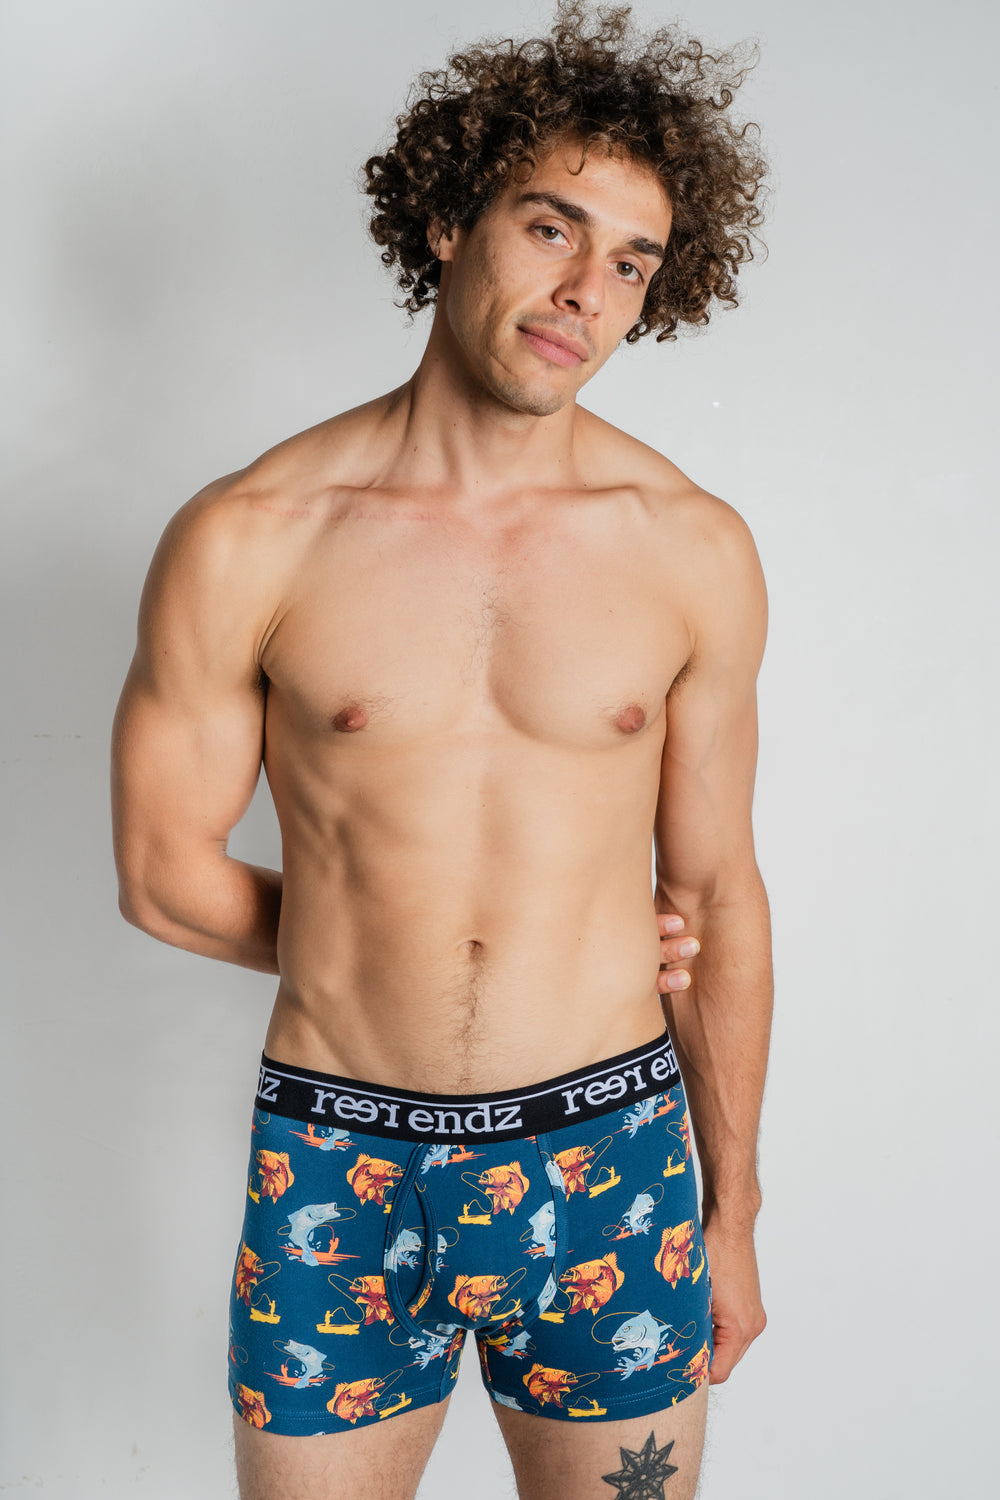 2PK Australian Trunks, Australian Men's Underwear